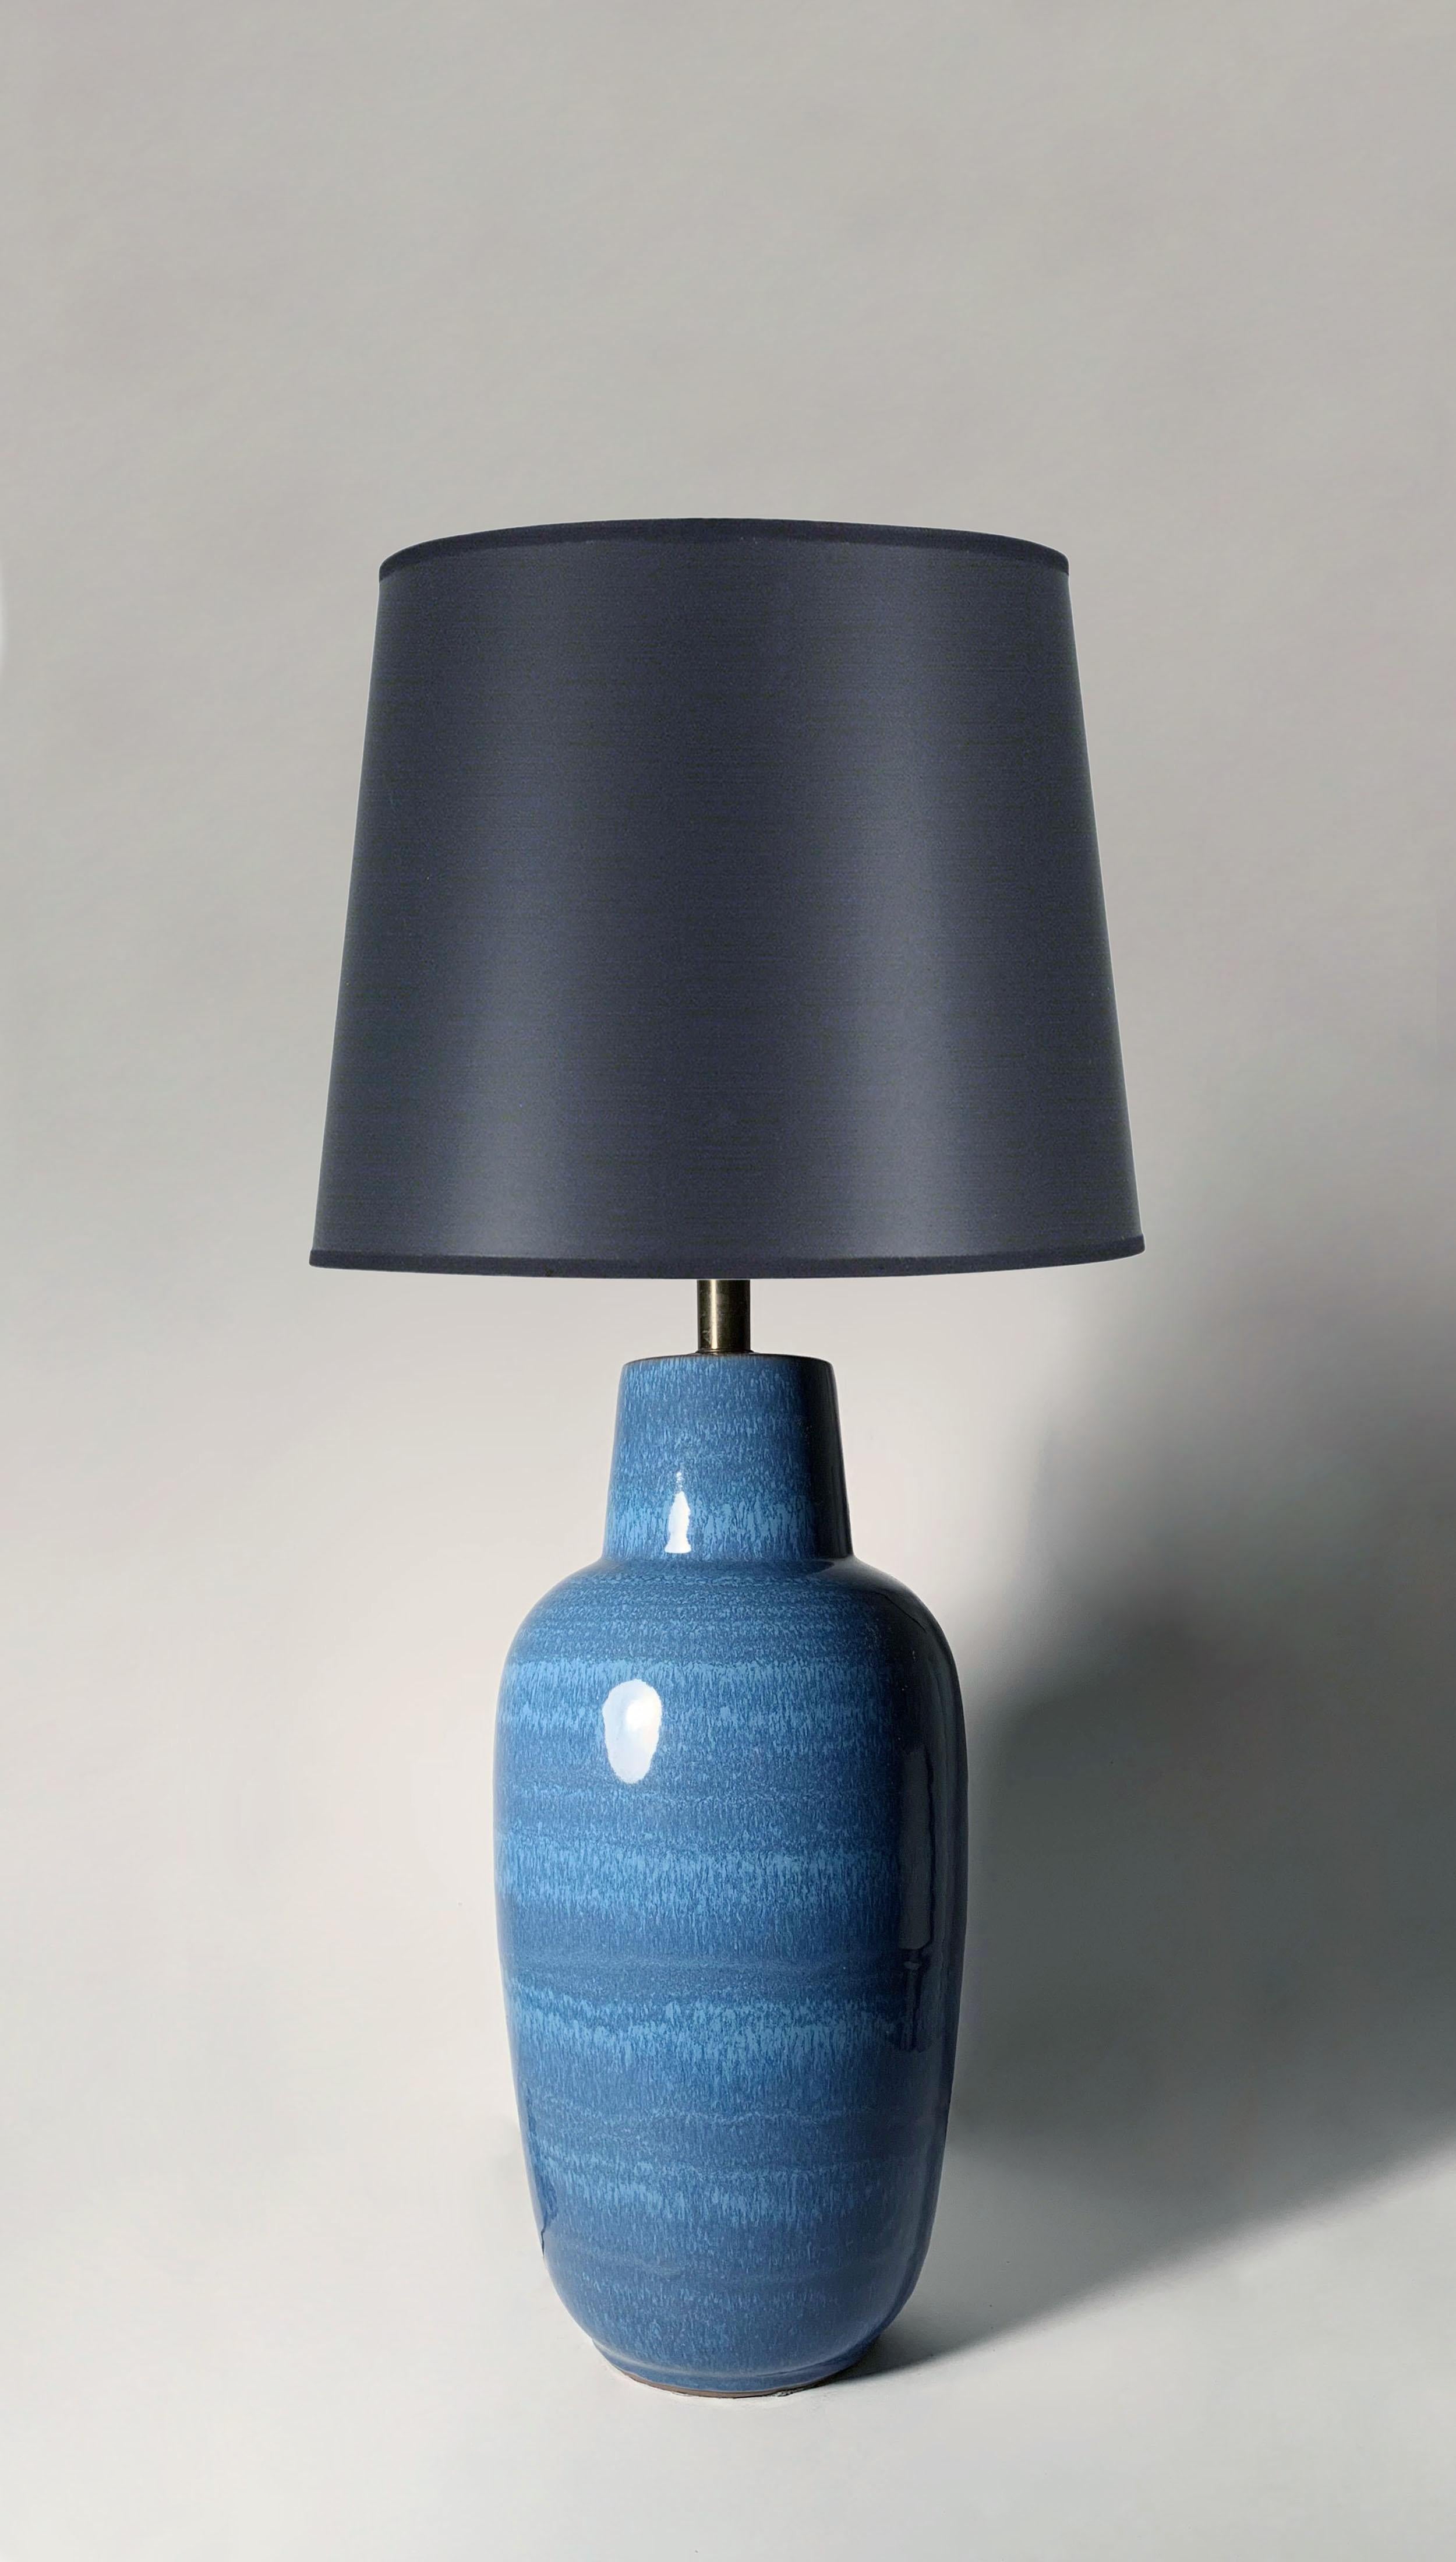 Lampe de table vintage en céramique/poterie de Lee Rosen pour Design Technics. Magnifique glaçure bleue en goutte-à-goutte sur celui-ci.

24